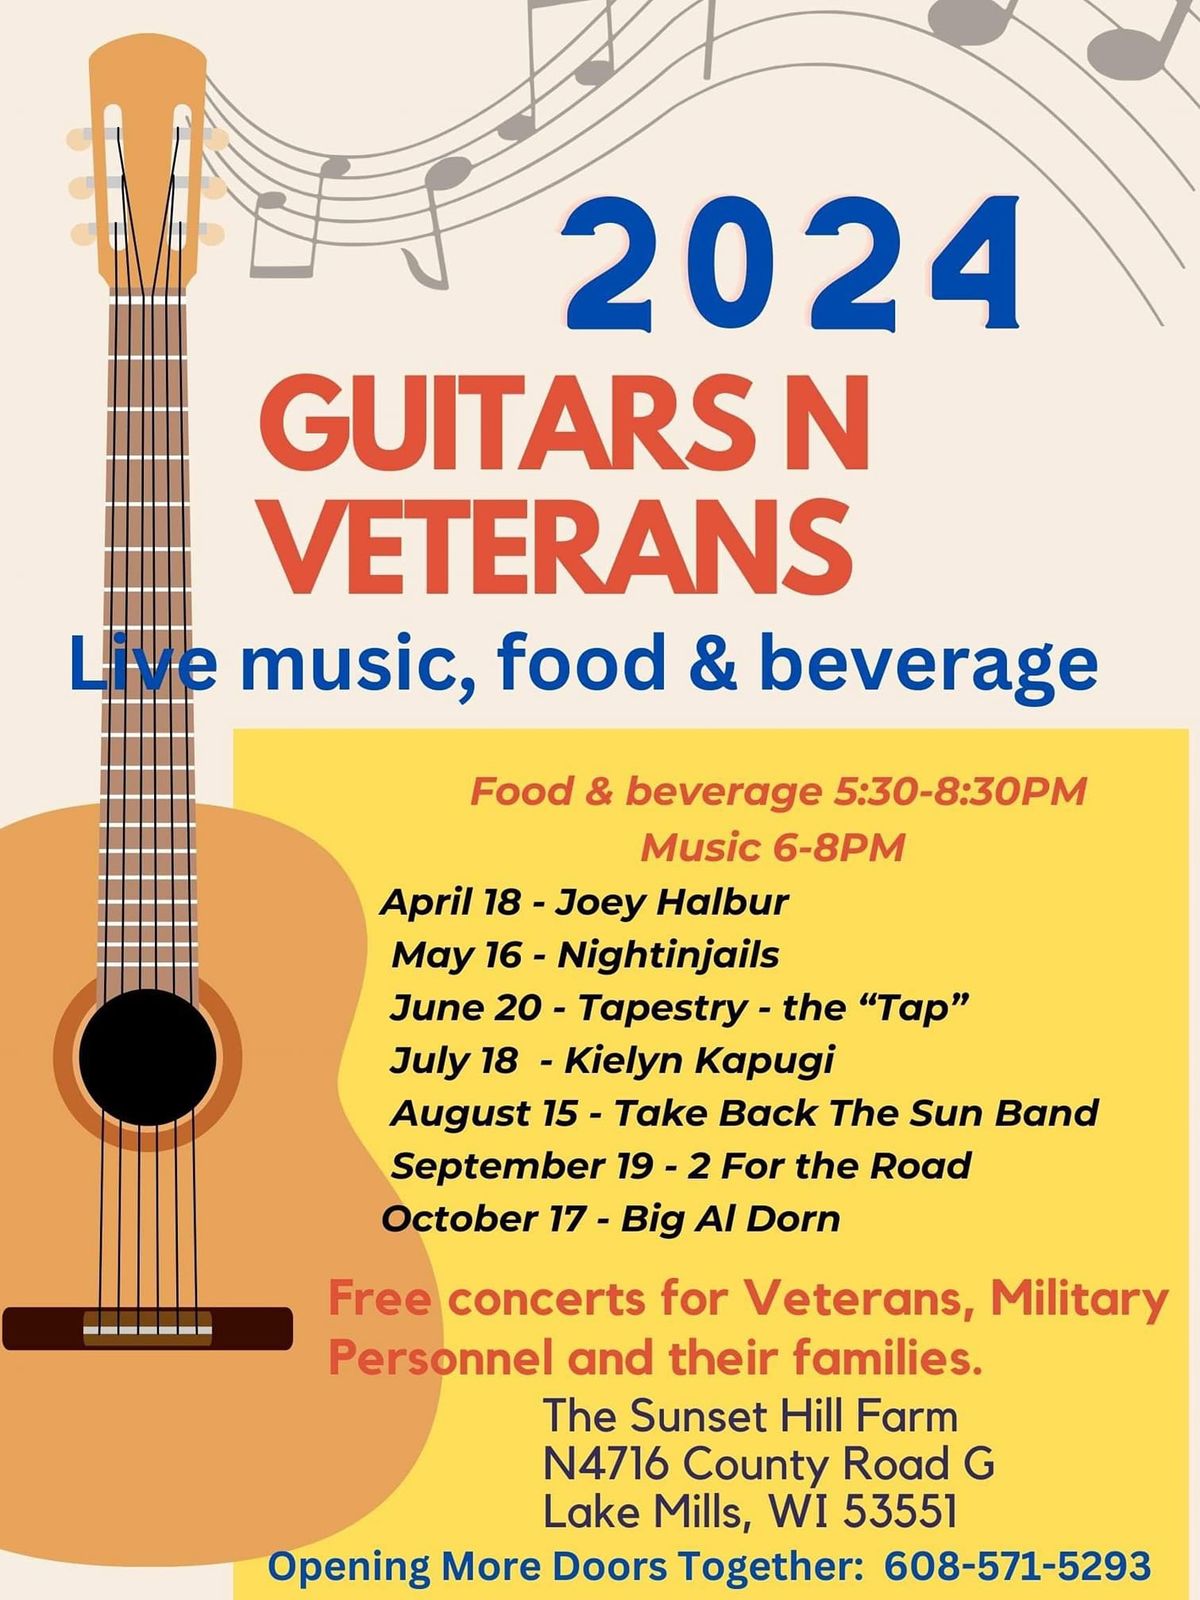 Guitars-N-Veterans 2024